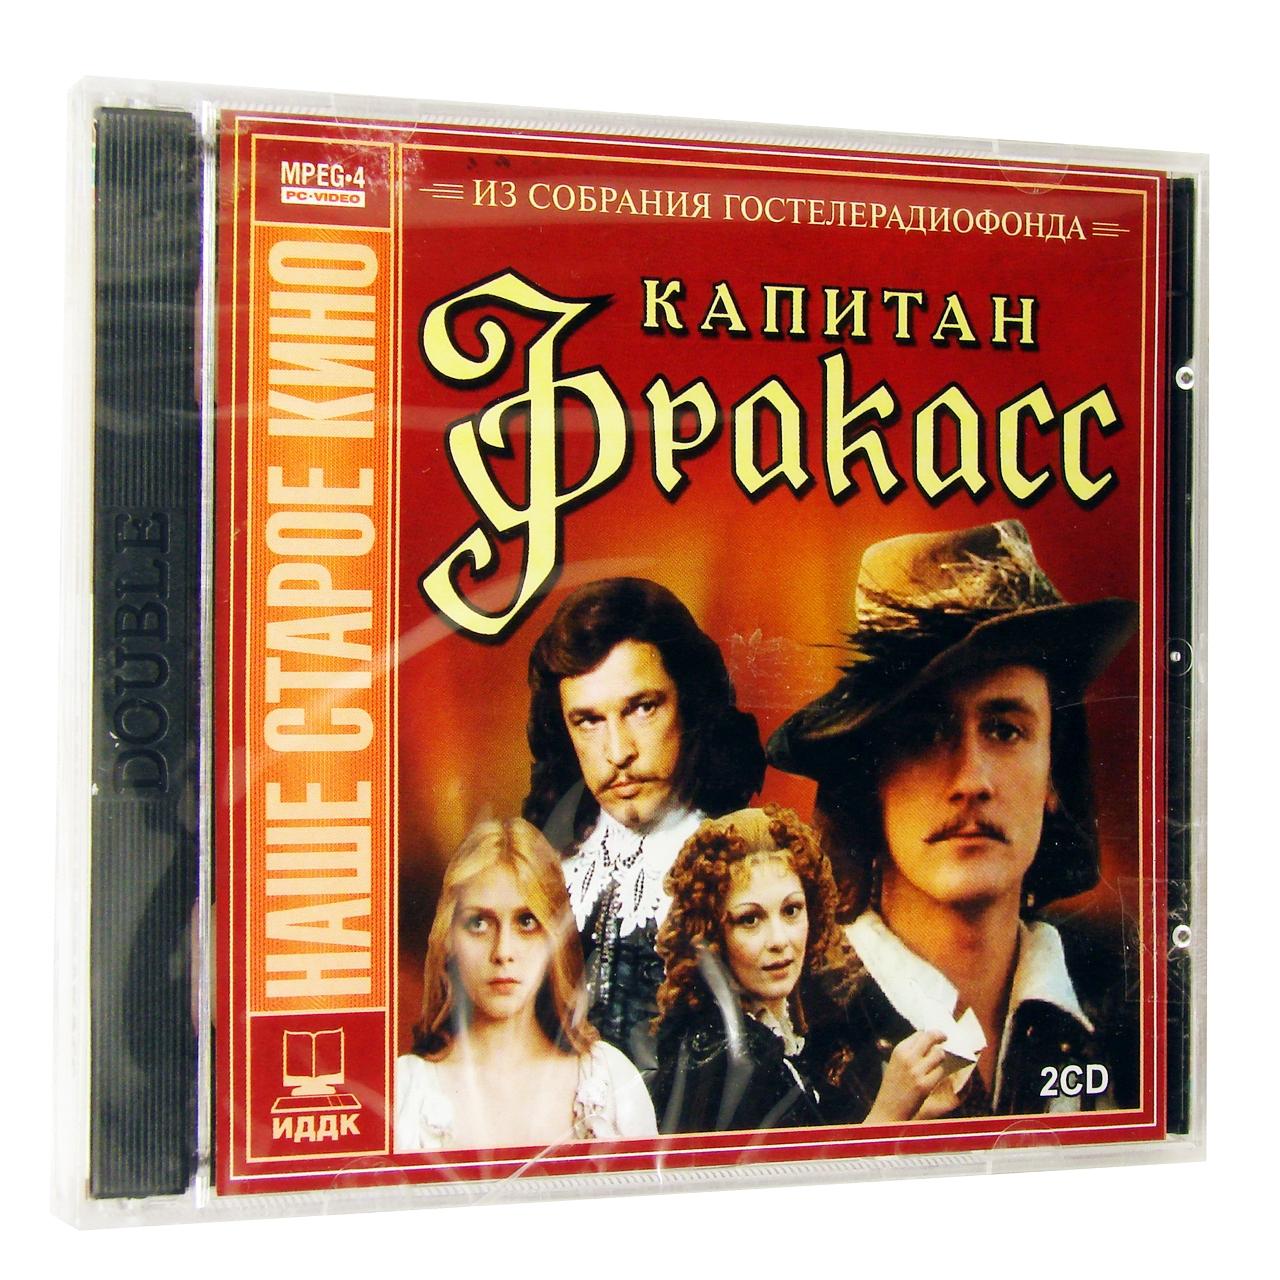 Компьютерный компакт-диск Капитан Фракас (ПК), фирма "Гостелерадиофонд", 2CD